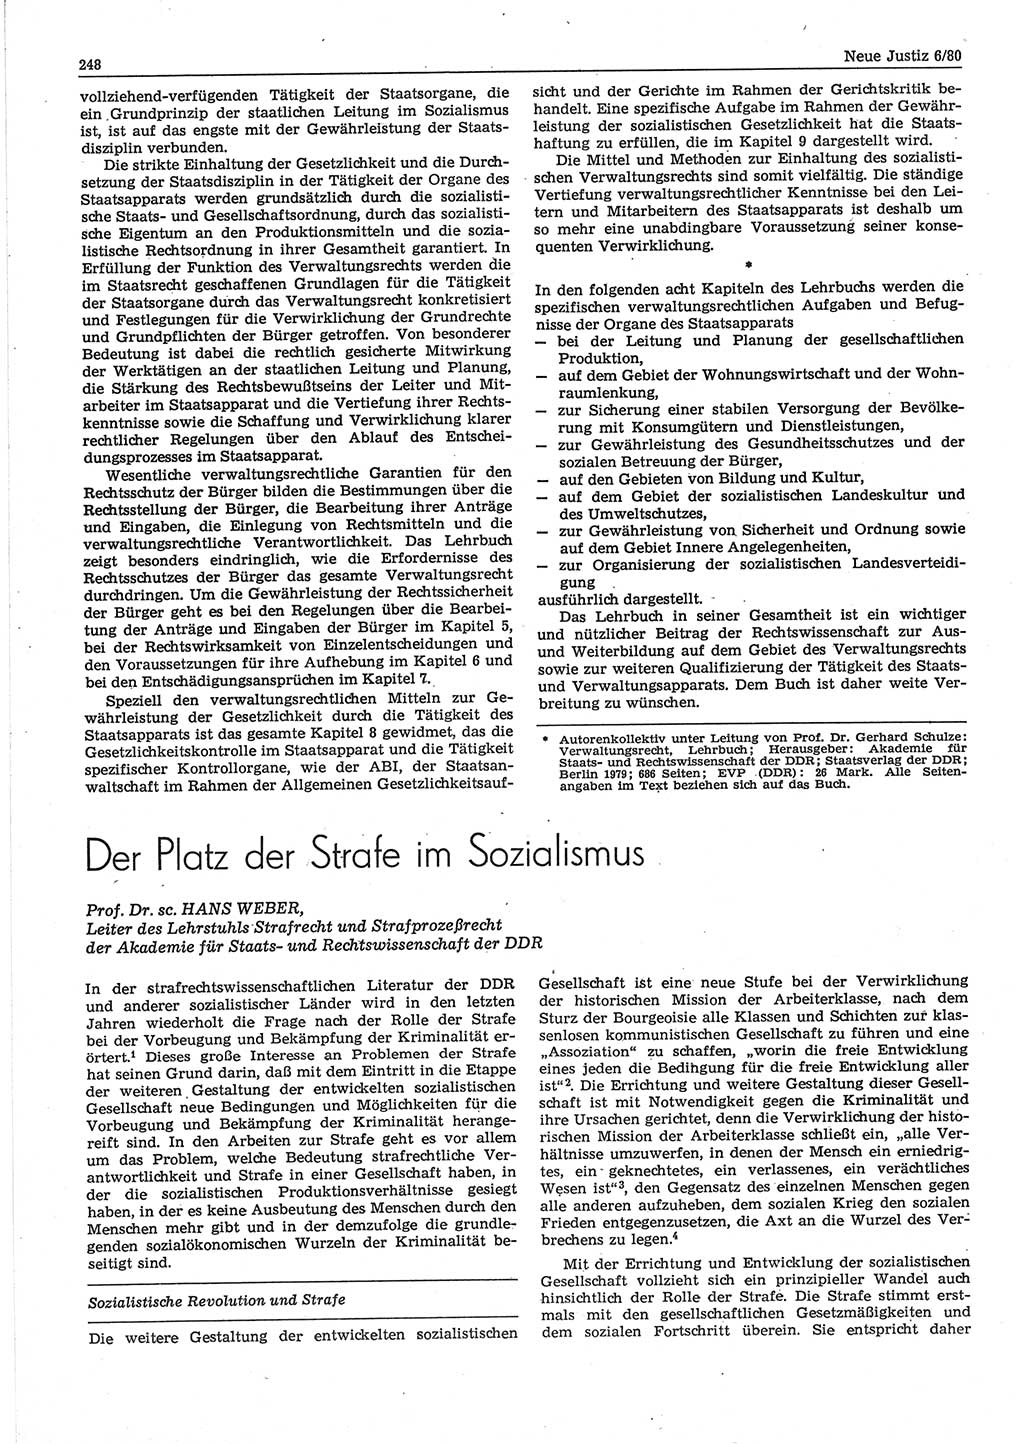 Neue Justiz (NJ), Zeitschrift für sozialistisches Recht und Gesetzlichkeit [Deutsche Demokratische Republik (DDR)], 34. Jahrgang 1980, Seite 248 (NJ DDR 1980, S. 248)